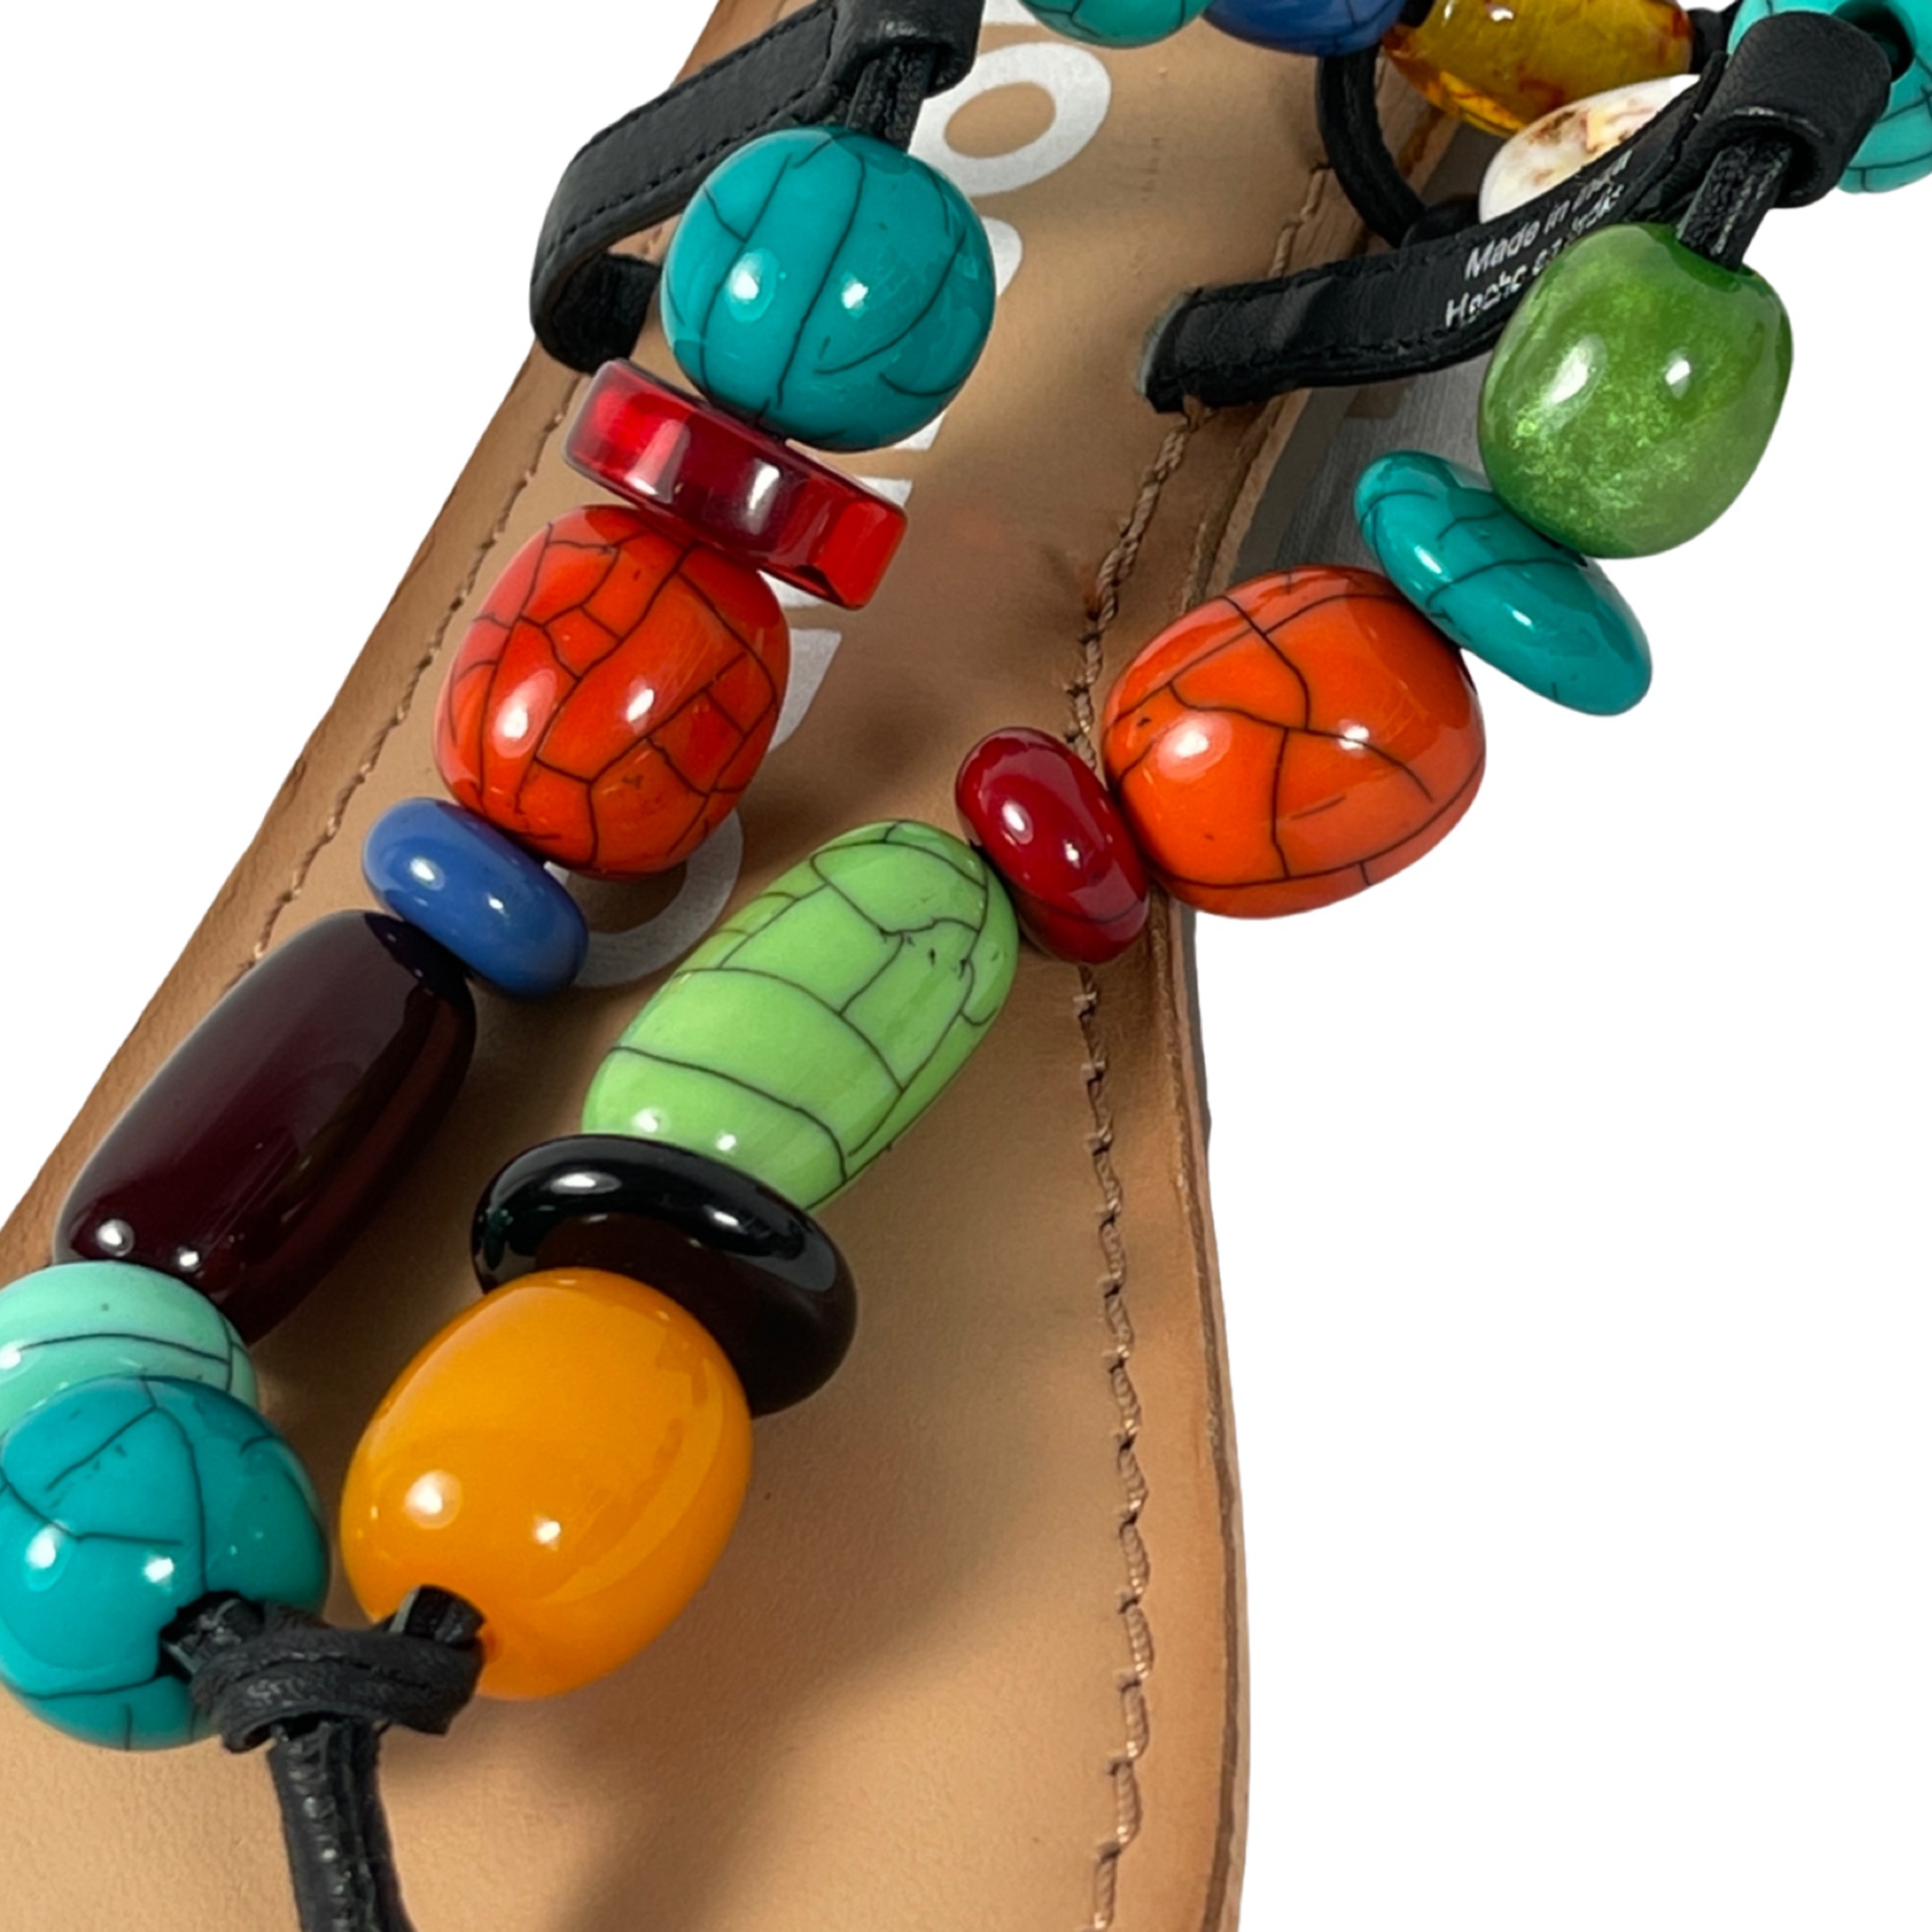 GIOSEPPO 69160 CHALLEX Damen Sandalette Zehentrenner Fesselriemen zum Binden multicolor